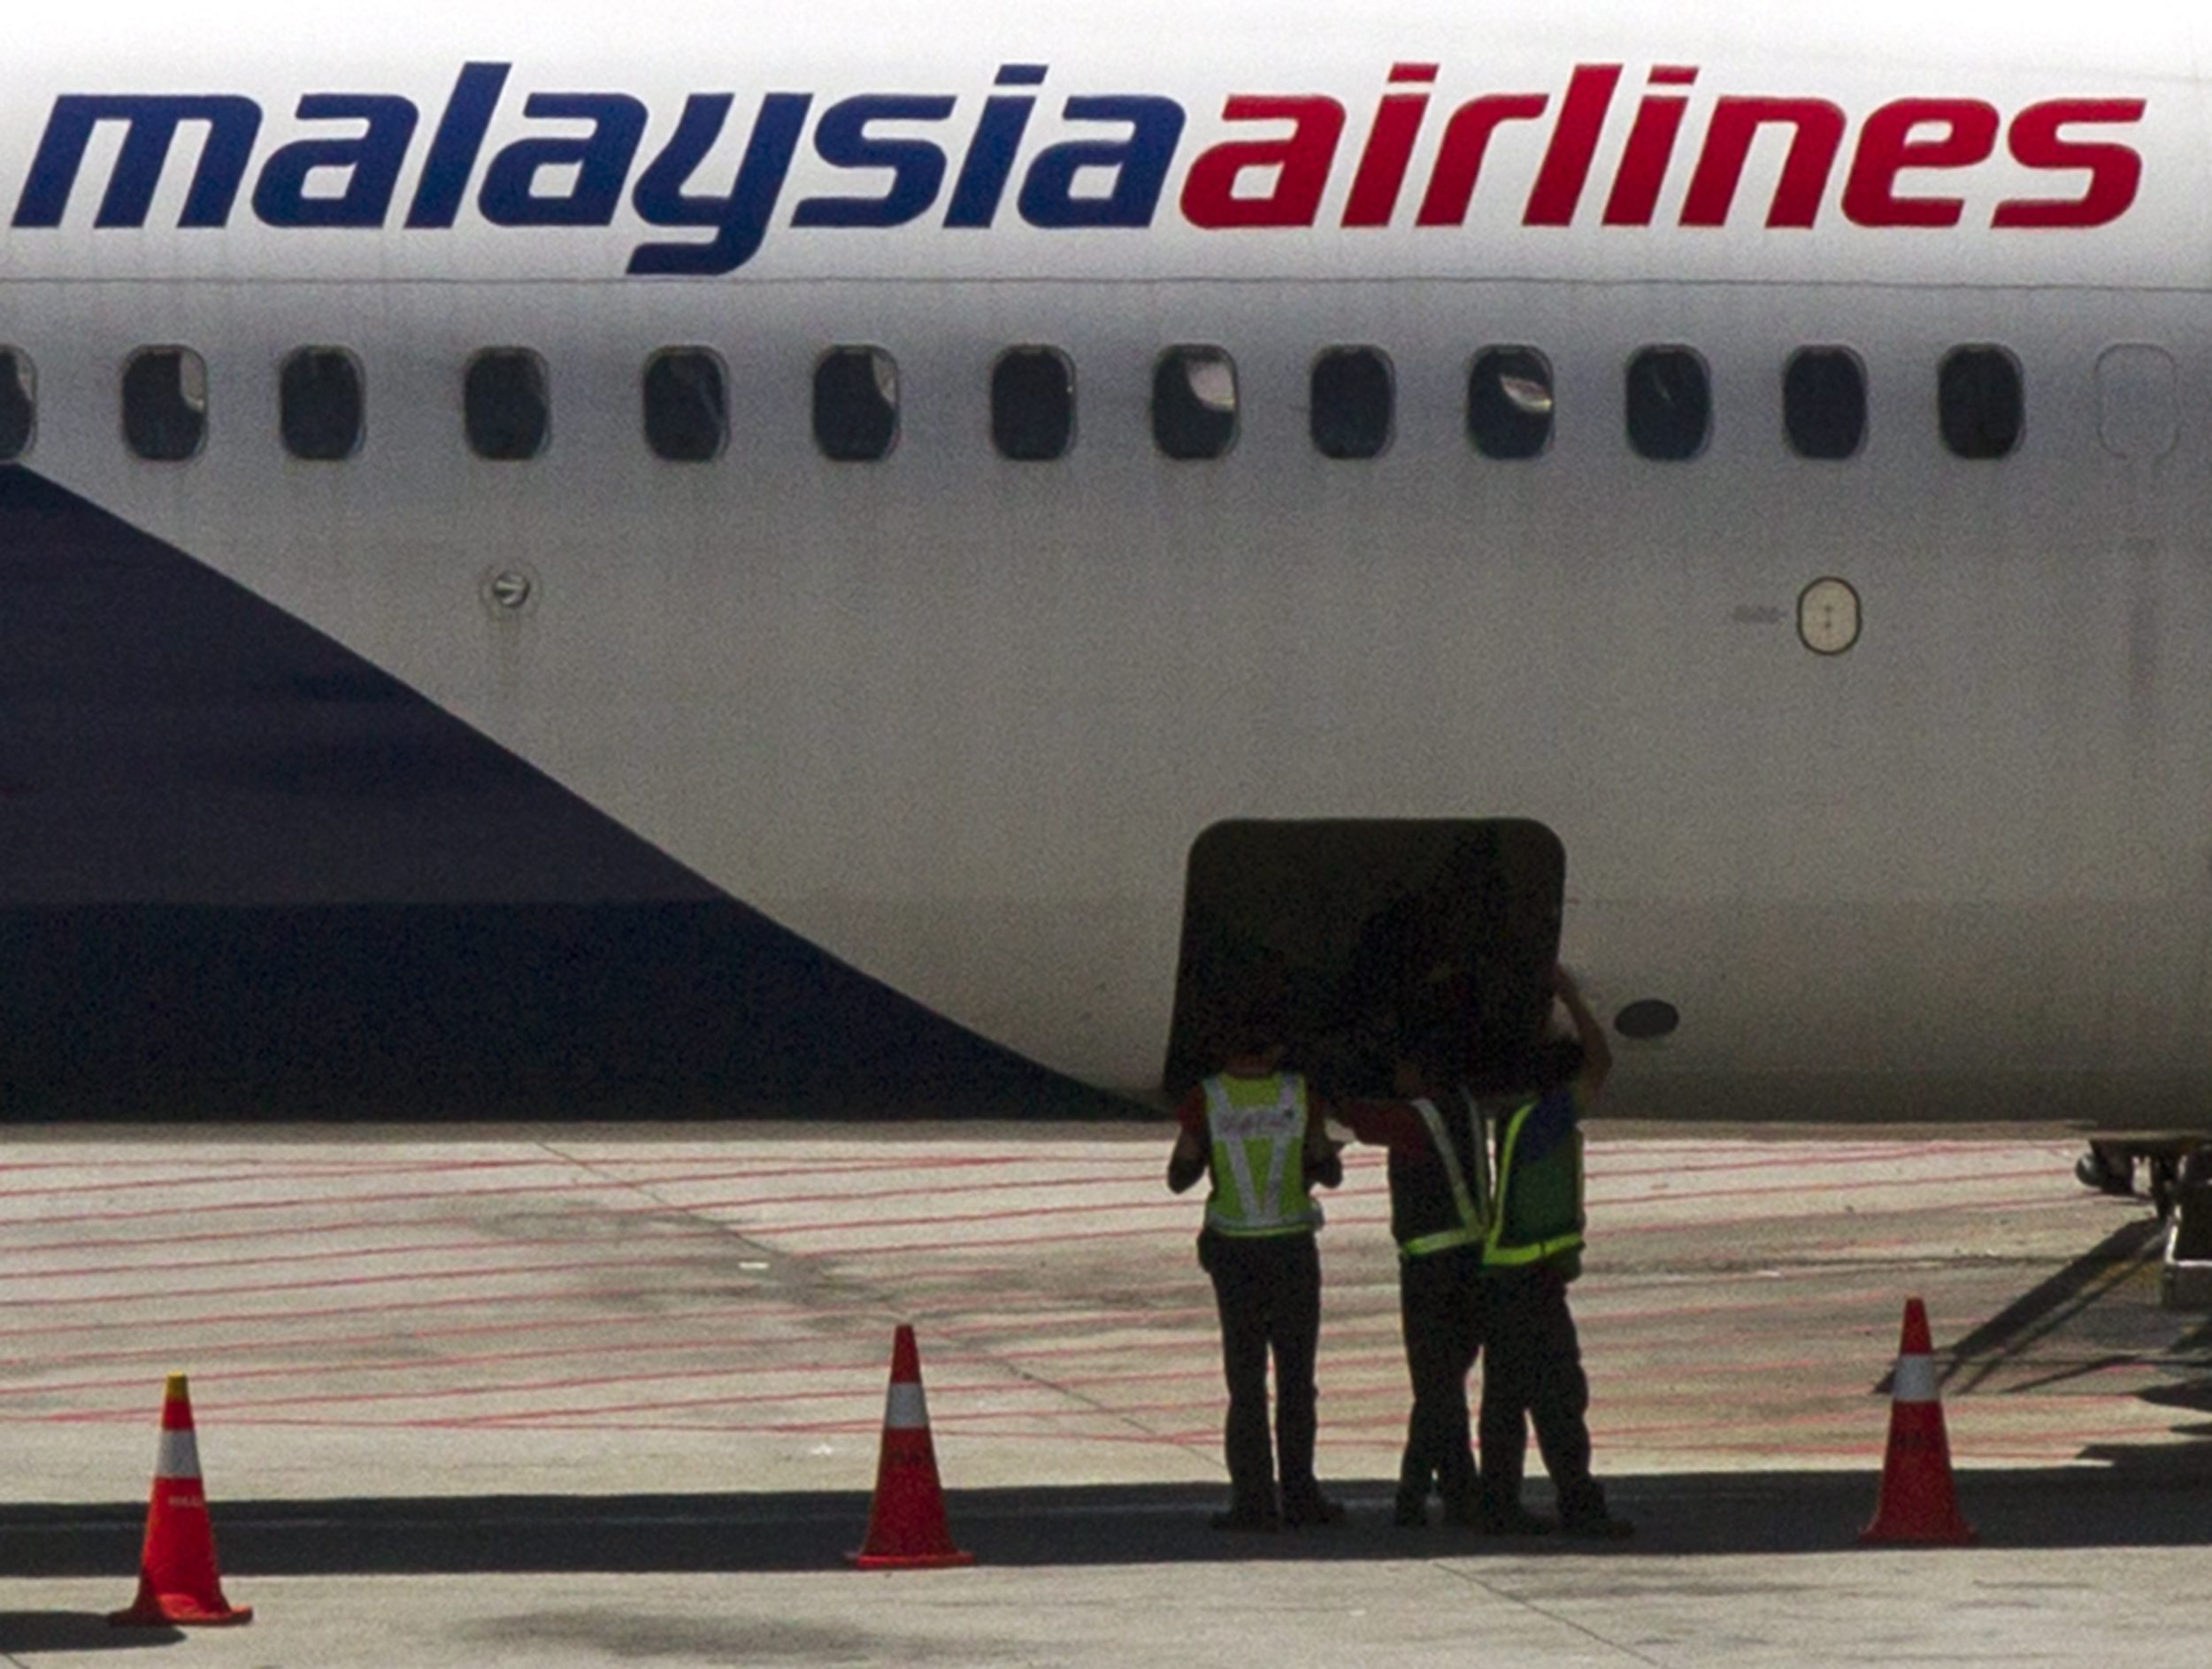 Υπό εξυγίανση οι Malaysia Airlines μετά τις δύο αεροπορικές τραγωδίες